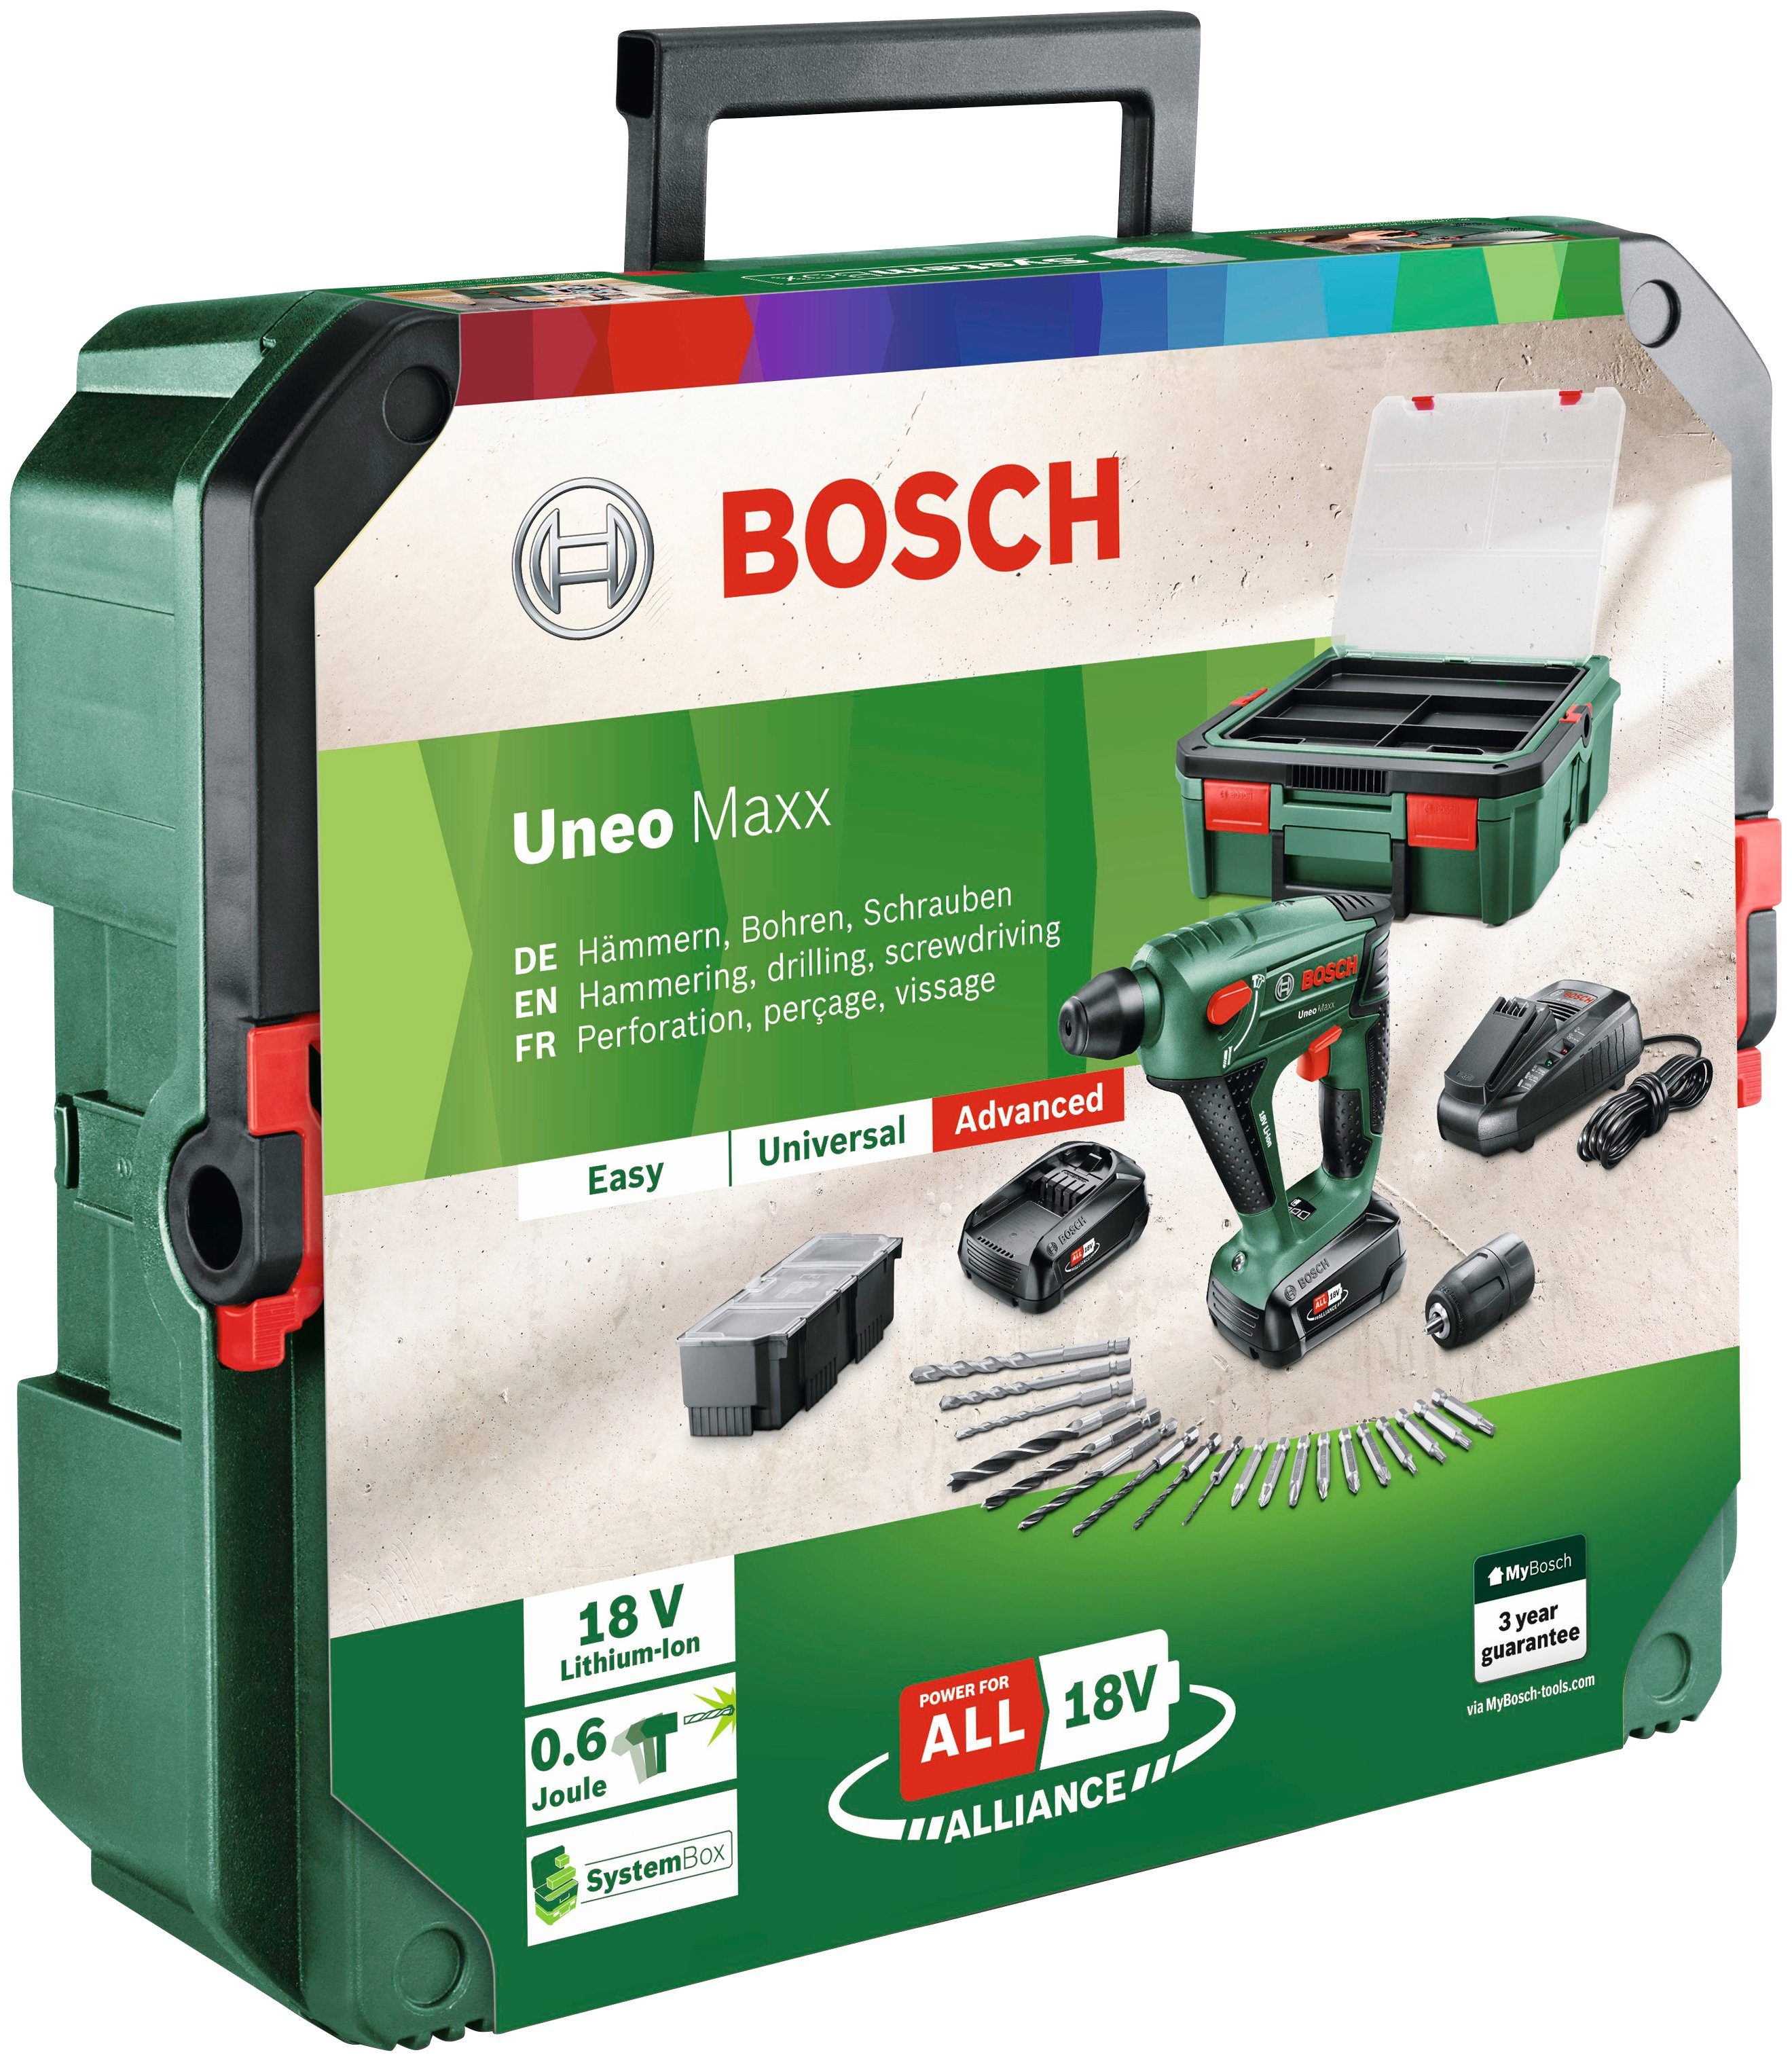 Bosch Home & Garden Akku-Bohrhammer 2 + Akkus Ladegerät Maxx mit Uneo und SystemBox